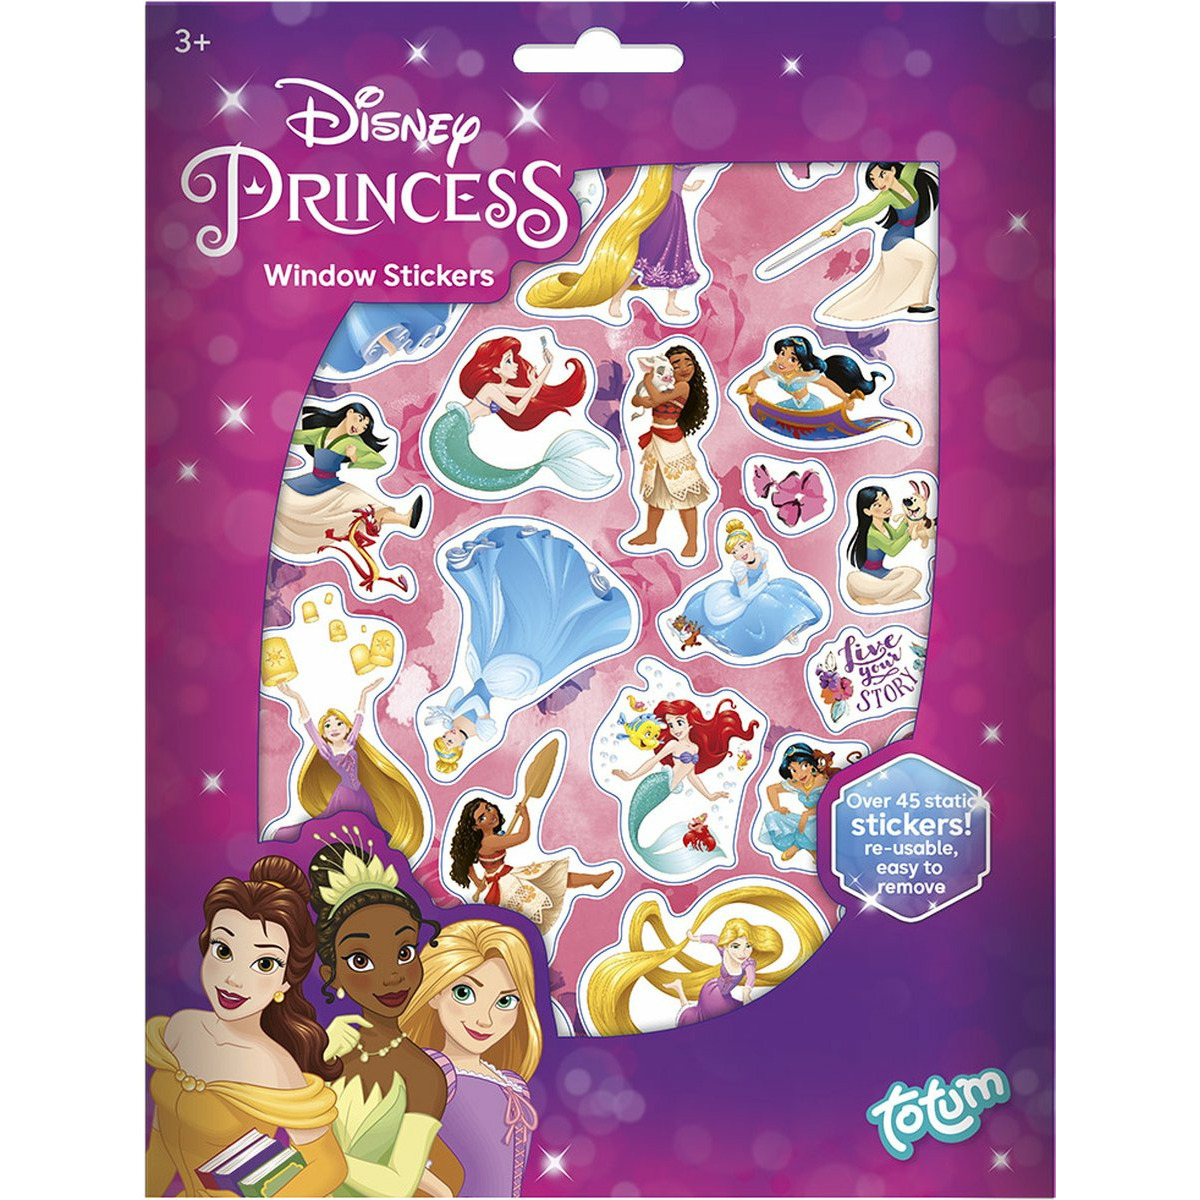 Totum Disney Princess auto raamstickers 45 stuks prinsessen thema voor kinderen